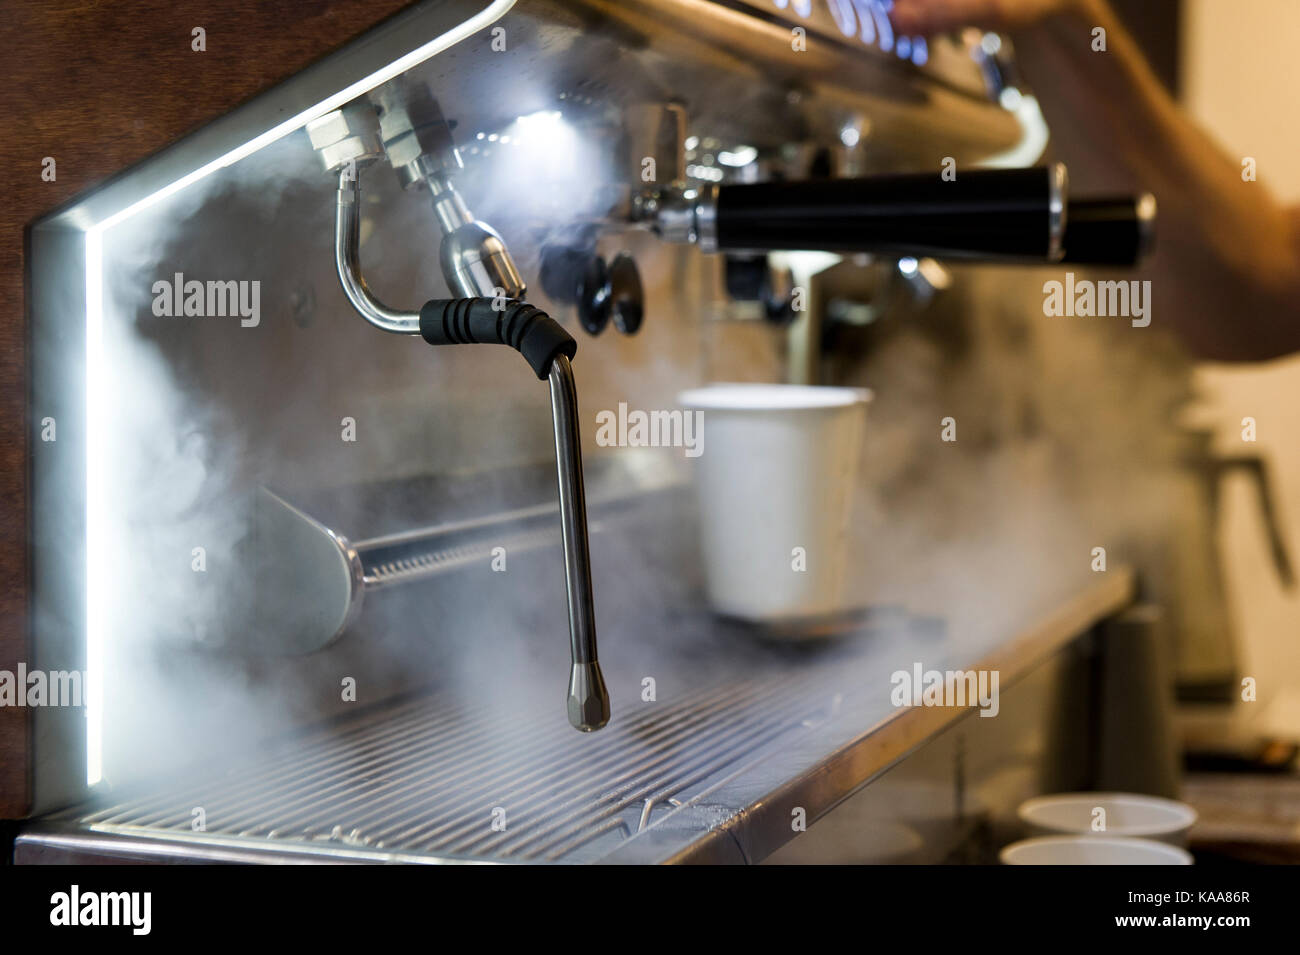 https://c8.alamy.com/compes/kaa86r/una-maquina-de-cafe-industrial-prepara-un-cafe-por-la-manana-kaa86r.jpg